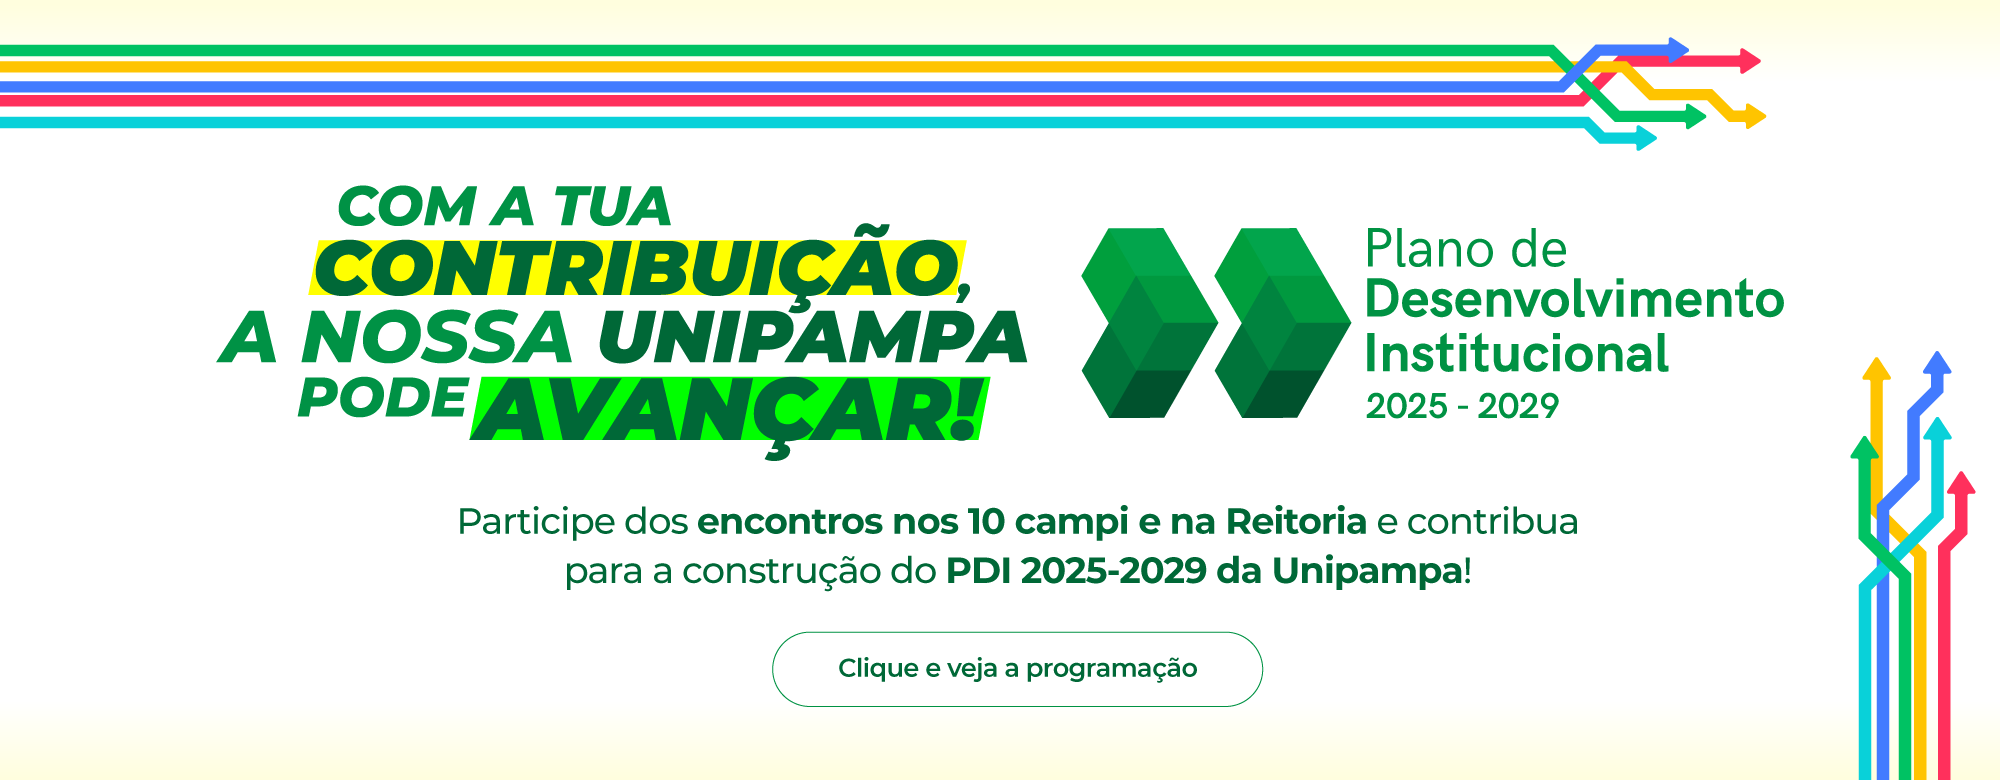 Unipampa convida comunidade acadêmica para elaborar Plano de Desenvolvimento Institucional 2025-2029